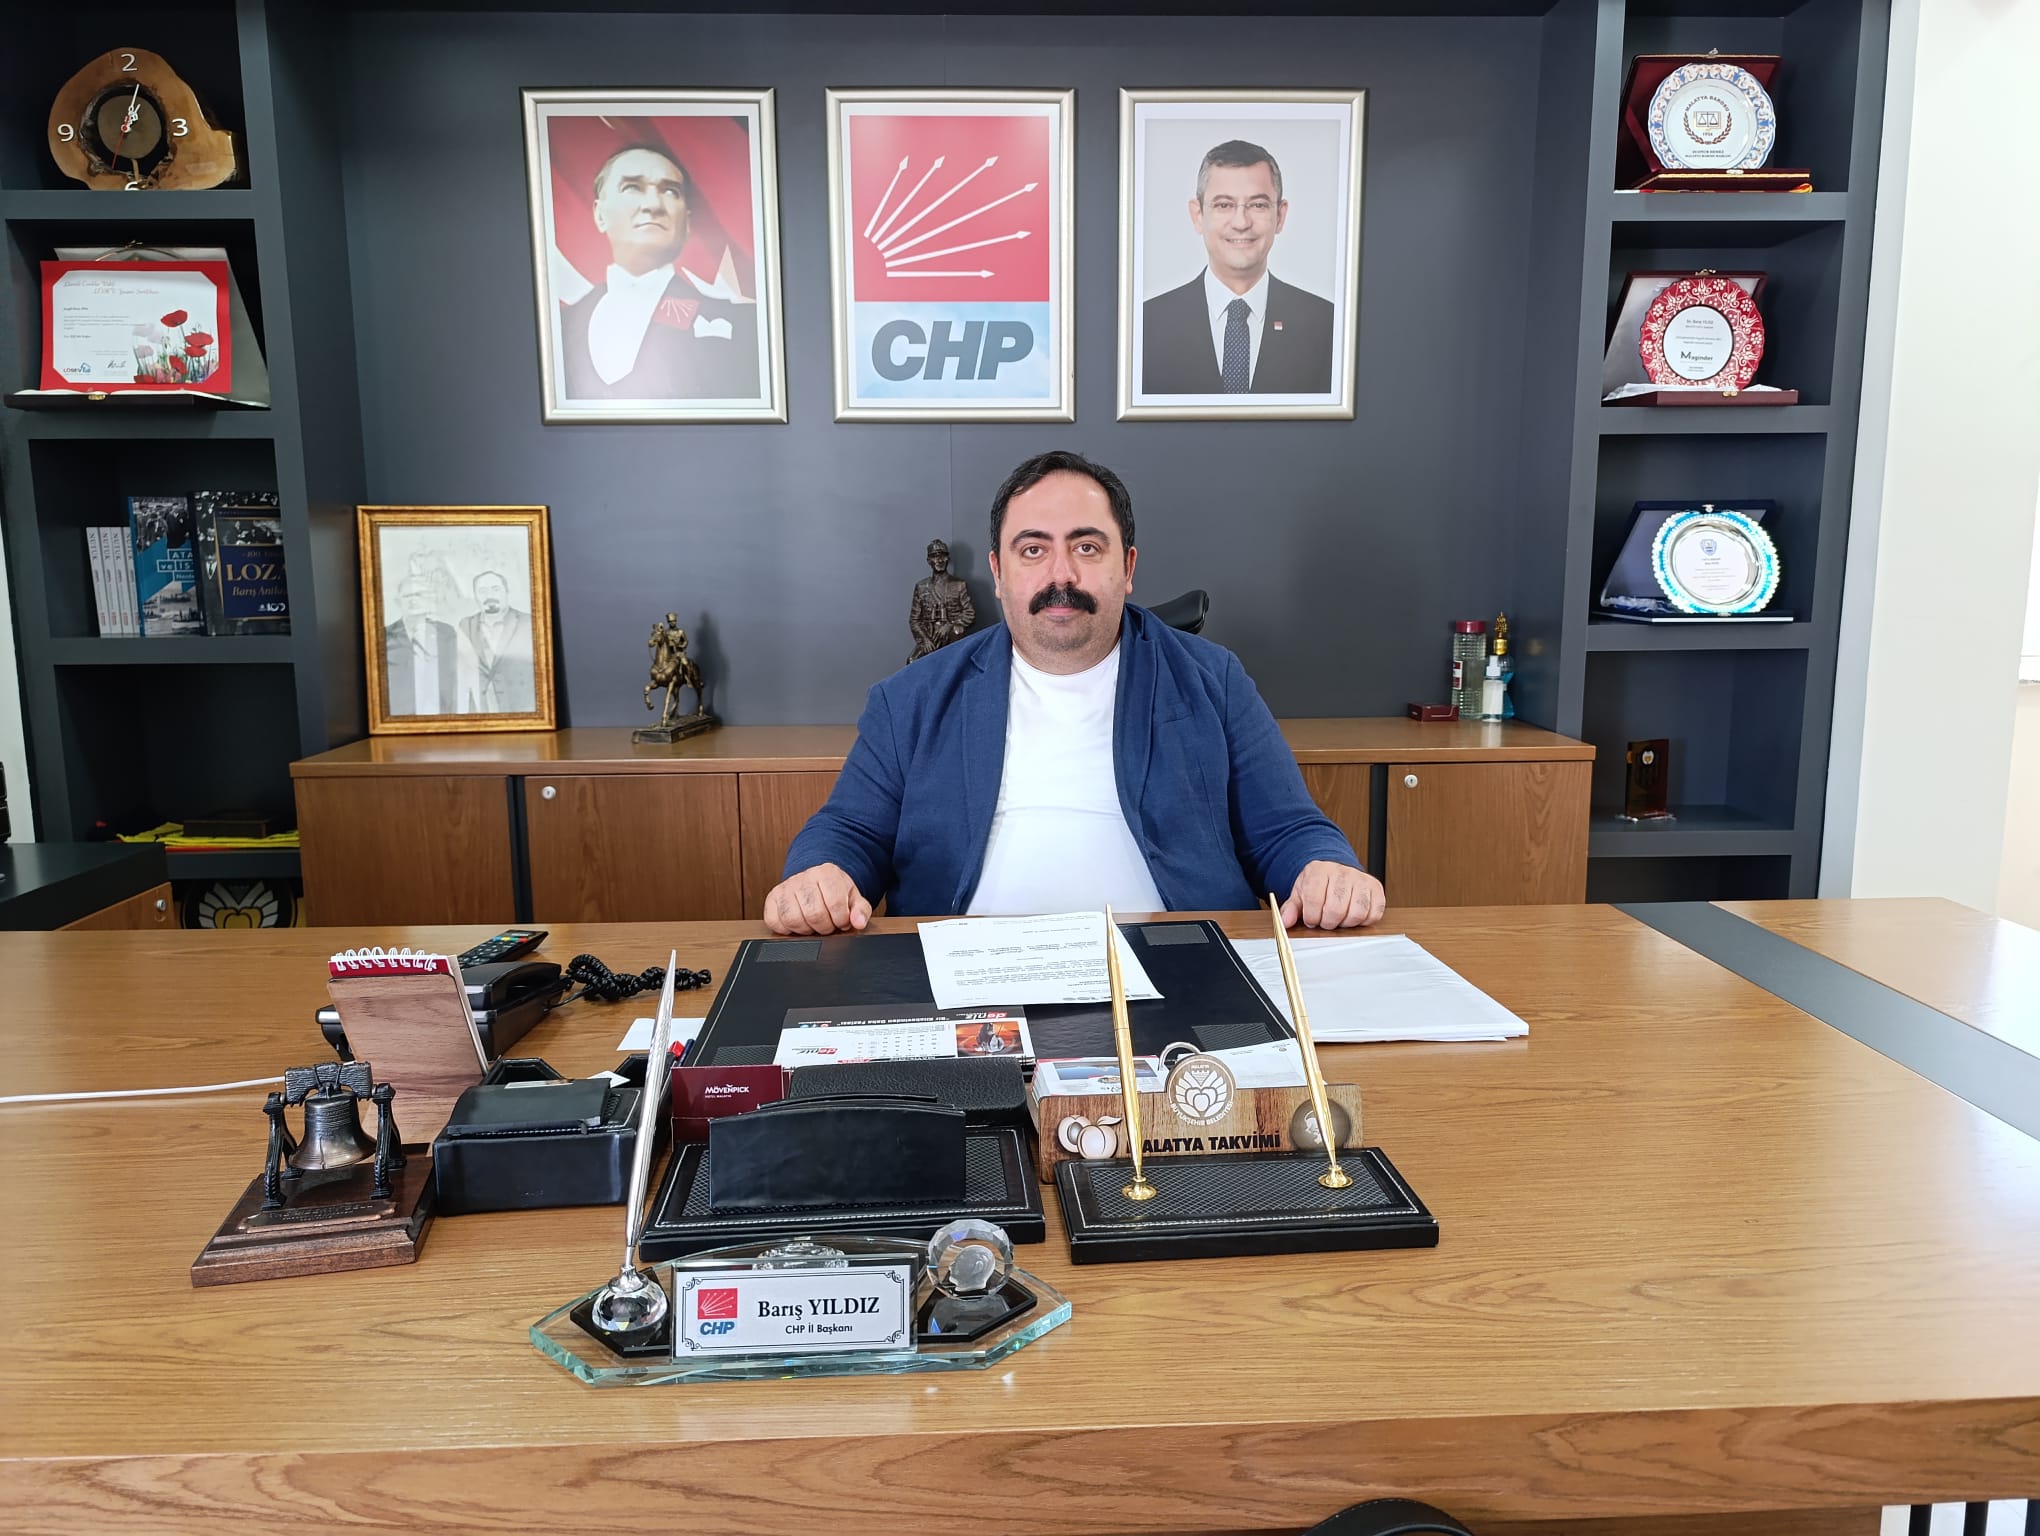 CHP İl Başkanı Barış Yıldız’ın 26 Mayıs “Büyük Emekliler Mitingi” ile ilgili basın açıklaması metni aşağıdadır.